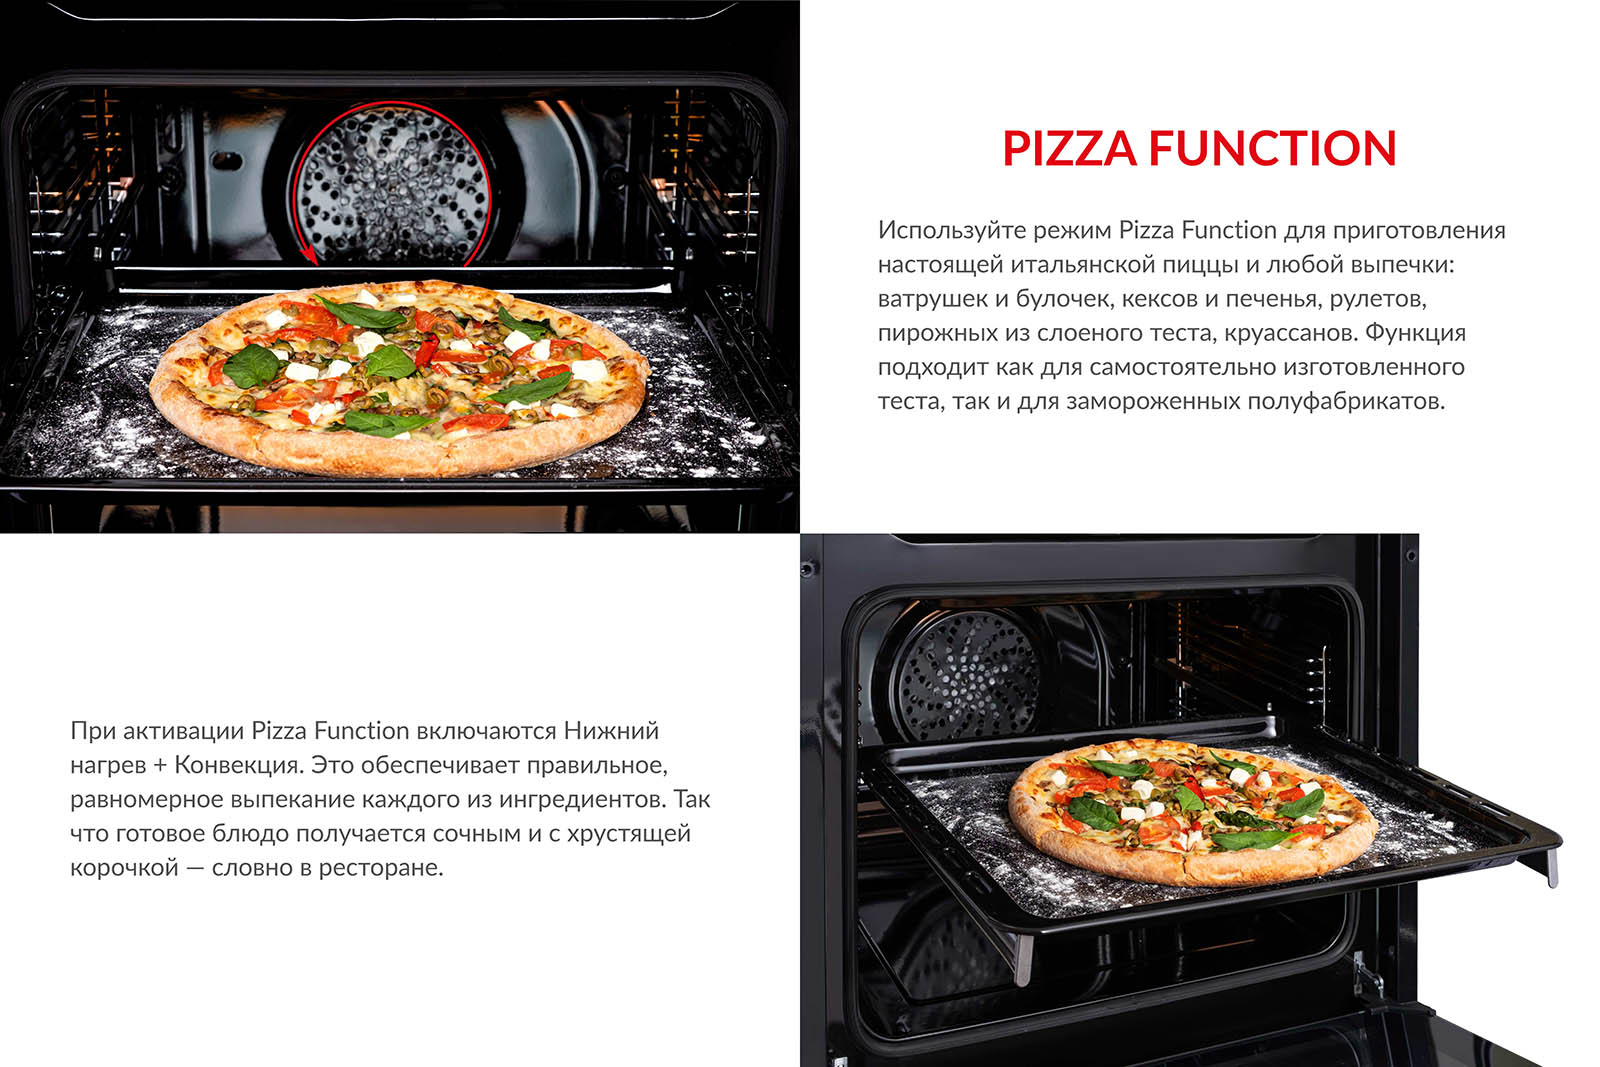 Используйте режим Pizza Function для приготовления настоящей итальянской пиццы и любой выпечки: ватрушек и булочек, кексов и печенья, рулетов, пирожных из слоеного теста, круассанов. Функция подходит как для самостоятельно изготовленного теста, так и для замороженных полуфабрикатов. При активации Pizza Function включаются Нижний нагрев + Конвекция. Это обеспечивает правильное и равномерное выпекание каждого из ингредиентов. Так что готовое блюдо получается сочным и с хрустящей корочкой, словно в ресторане